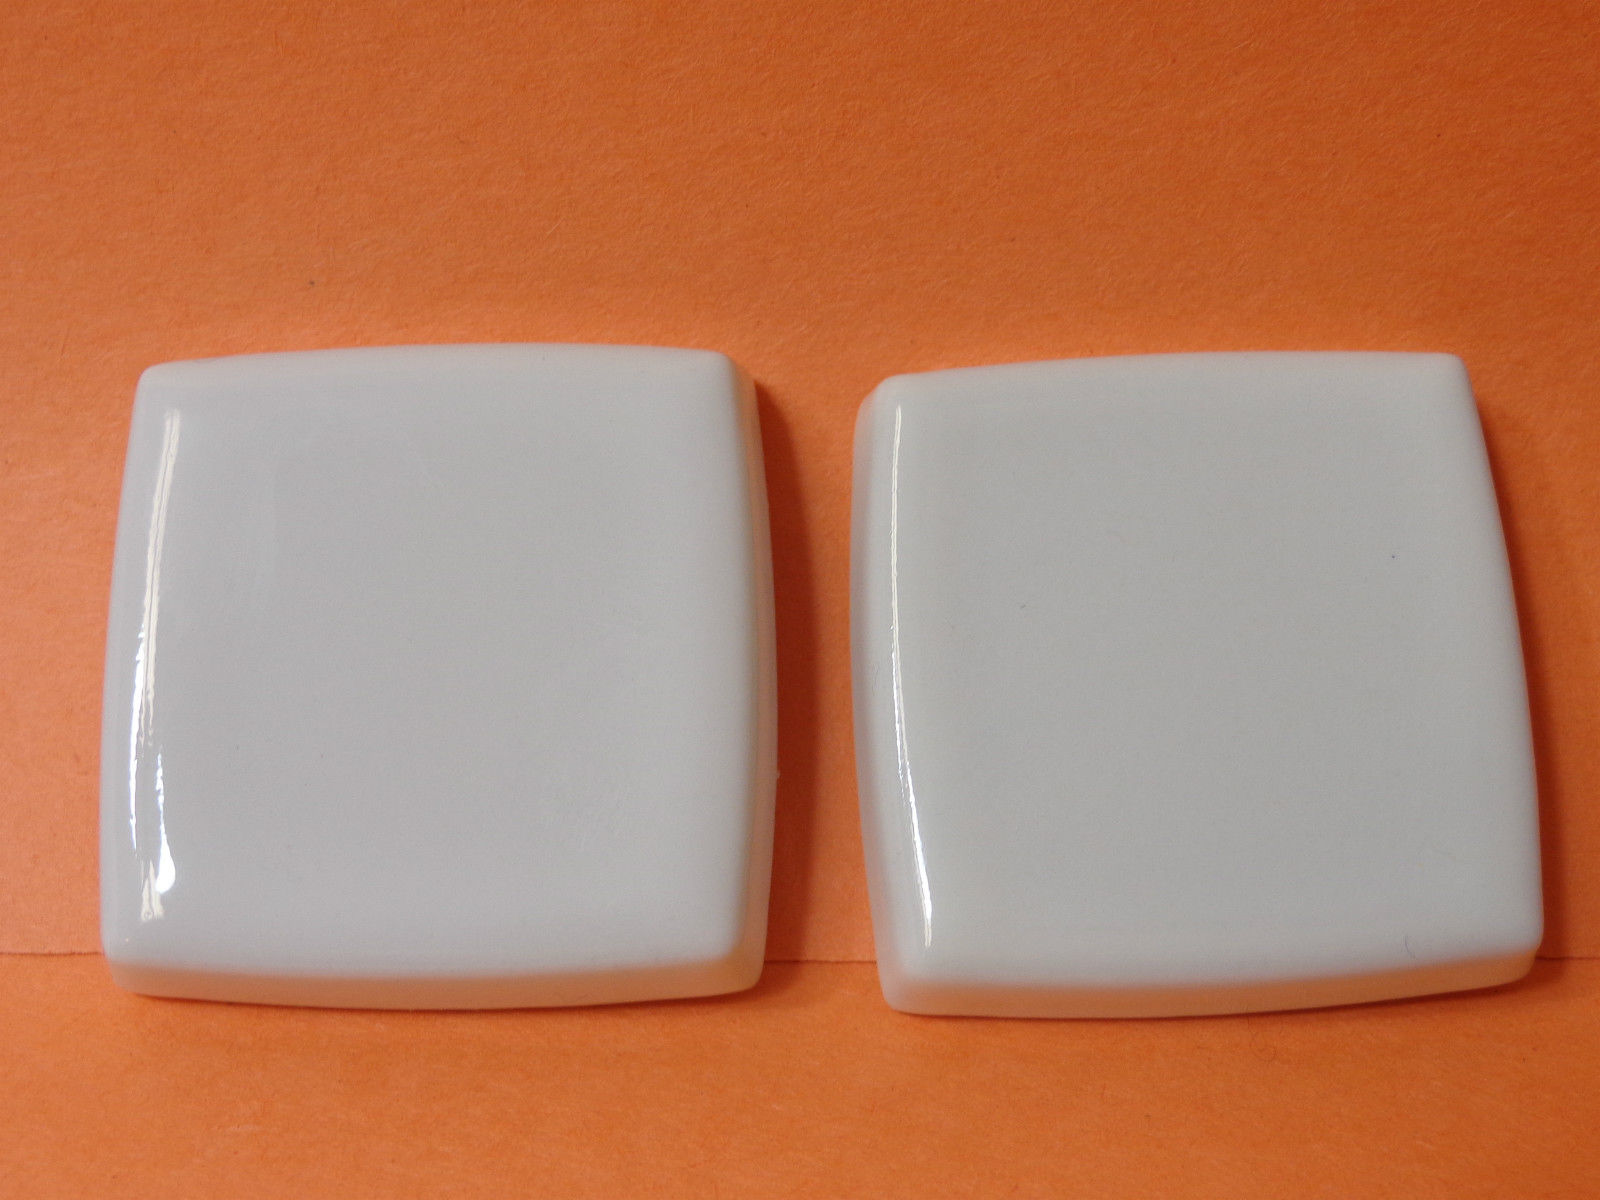 Kohler | 9926-0 | KL9926-0 (22493-0) Kohler Alterna Large 2-1/2" Square Ceramic Inserts - WHITE